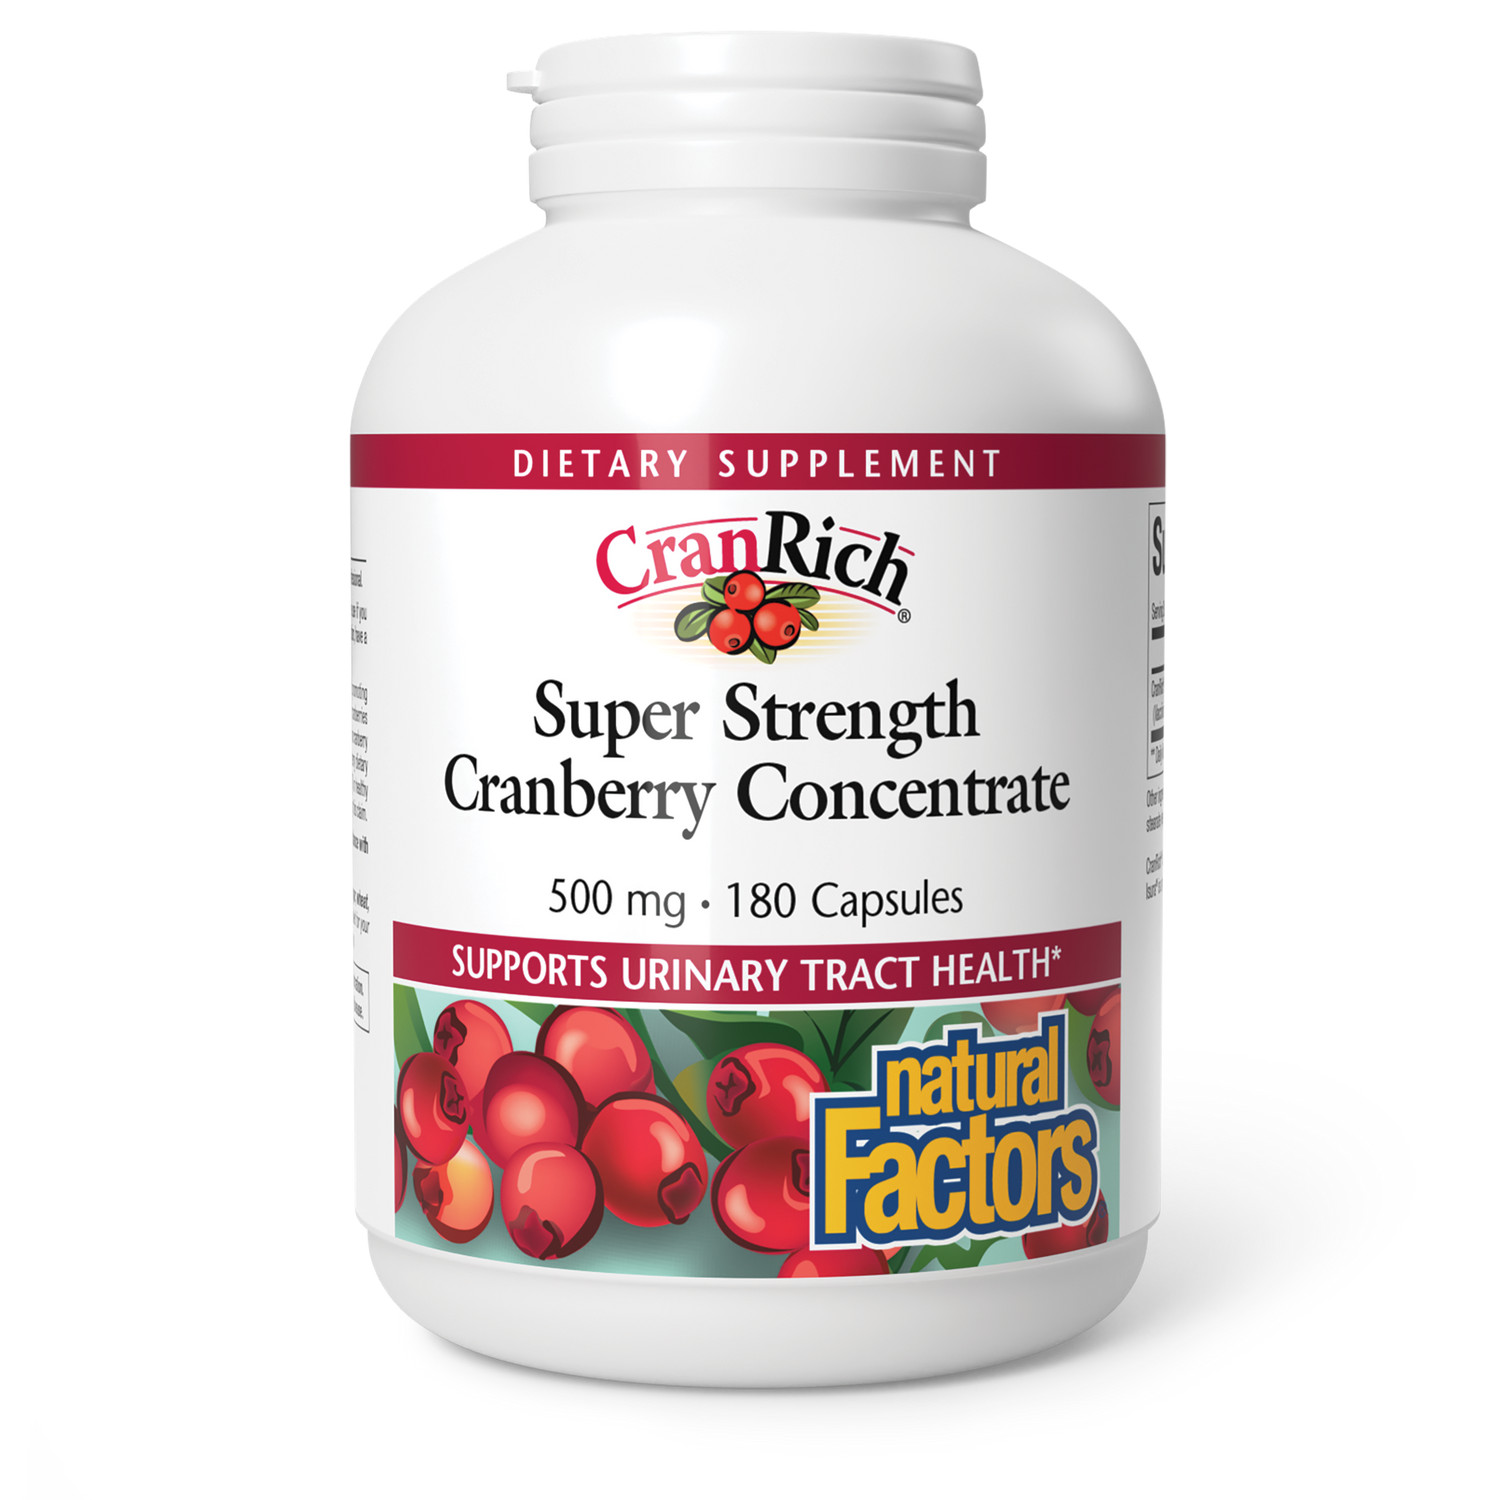 Super Strength Cranberry Concentrate 500 mg for Natural Factors |variant|hi-res|4513U